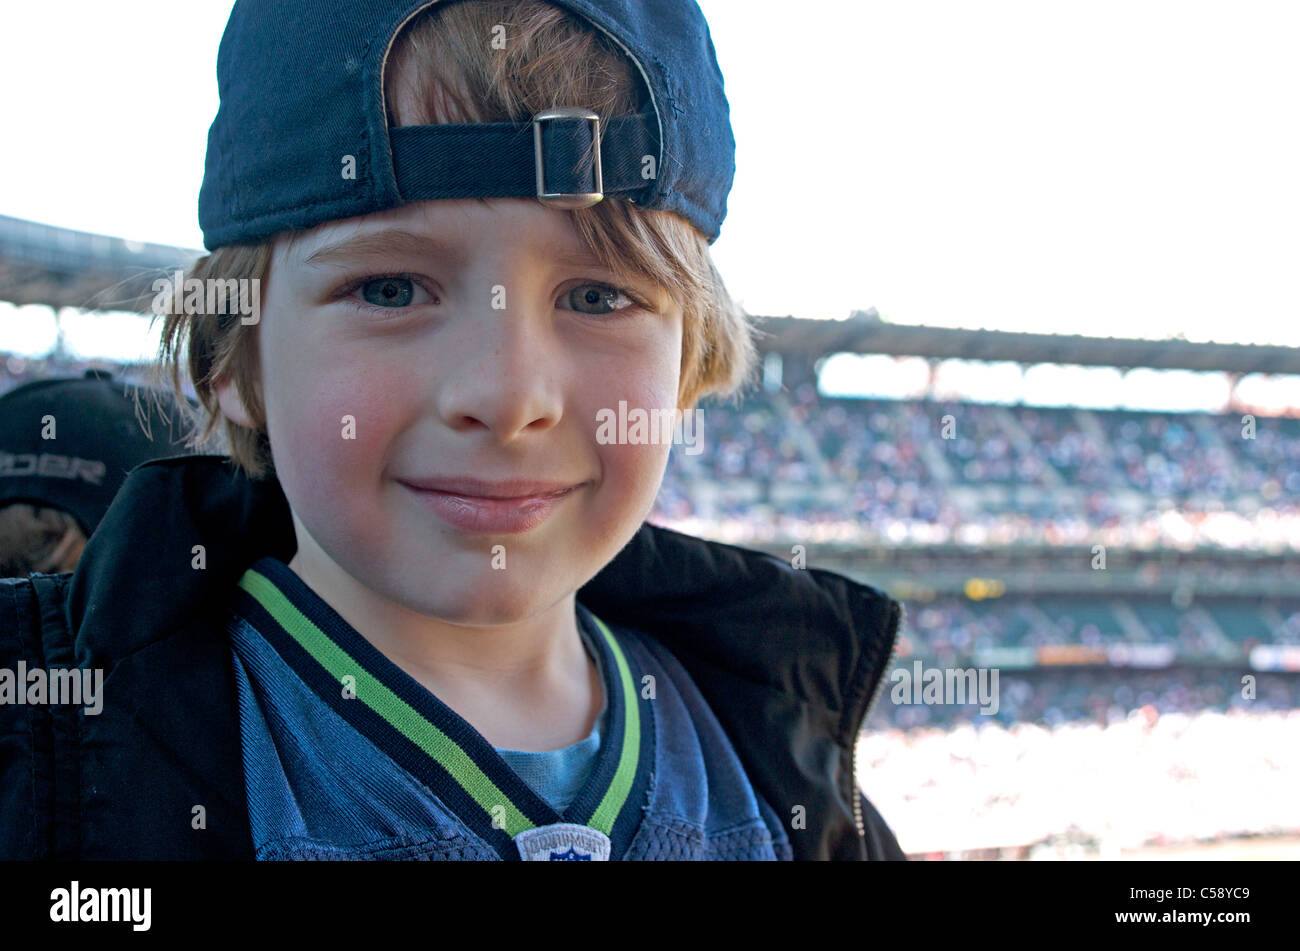 Junge im Baseball-Spiel im Stadion Stockfoto